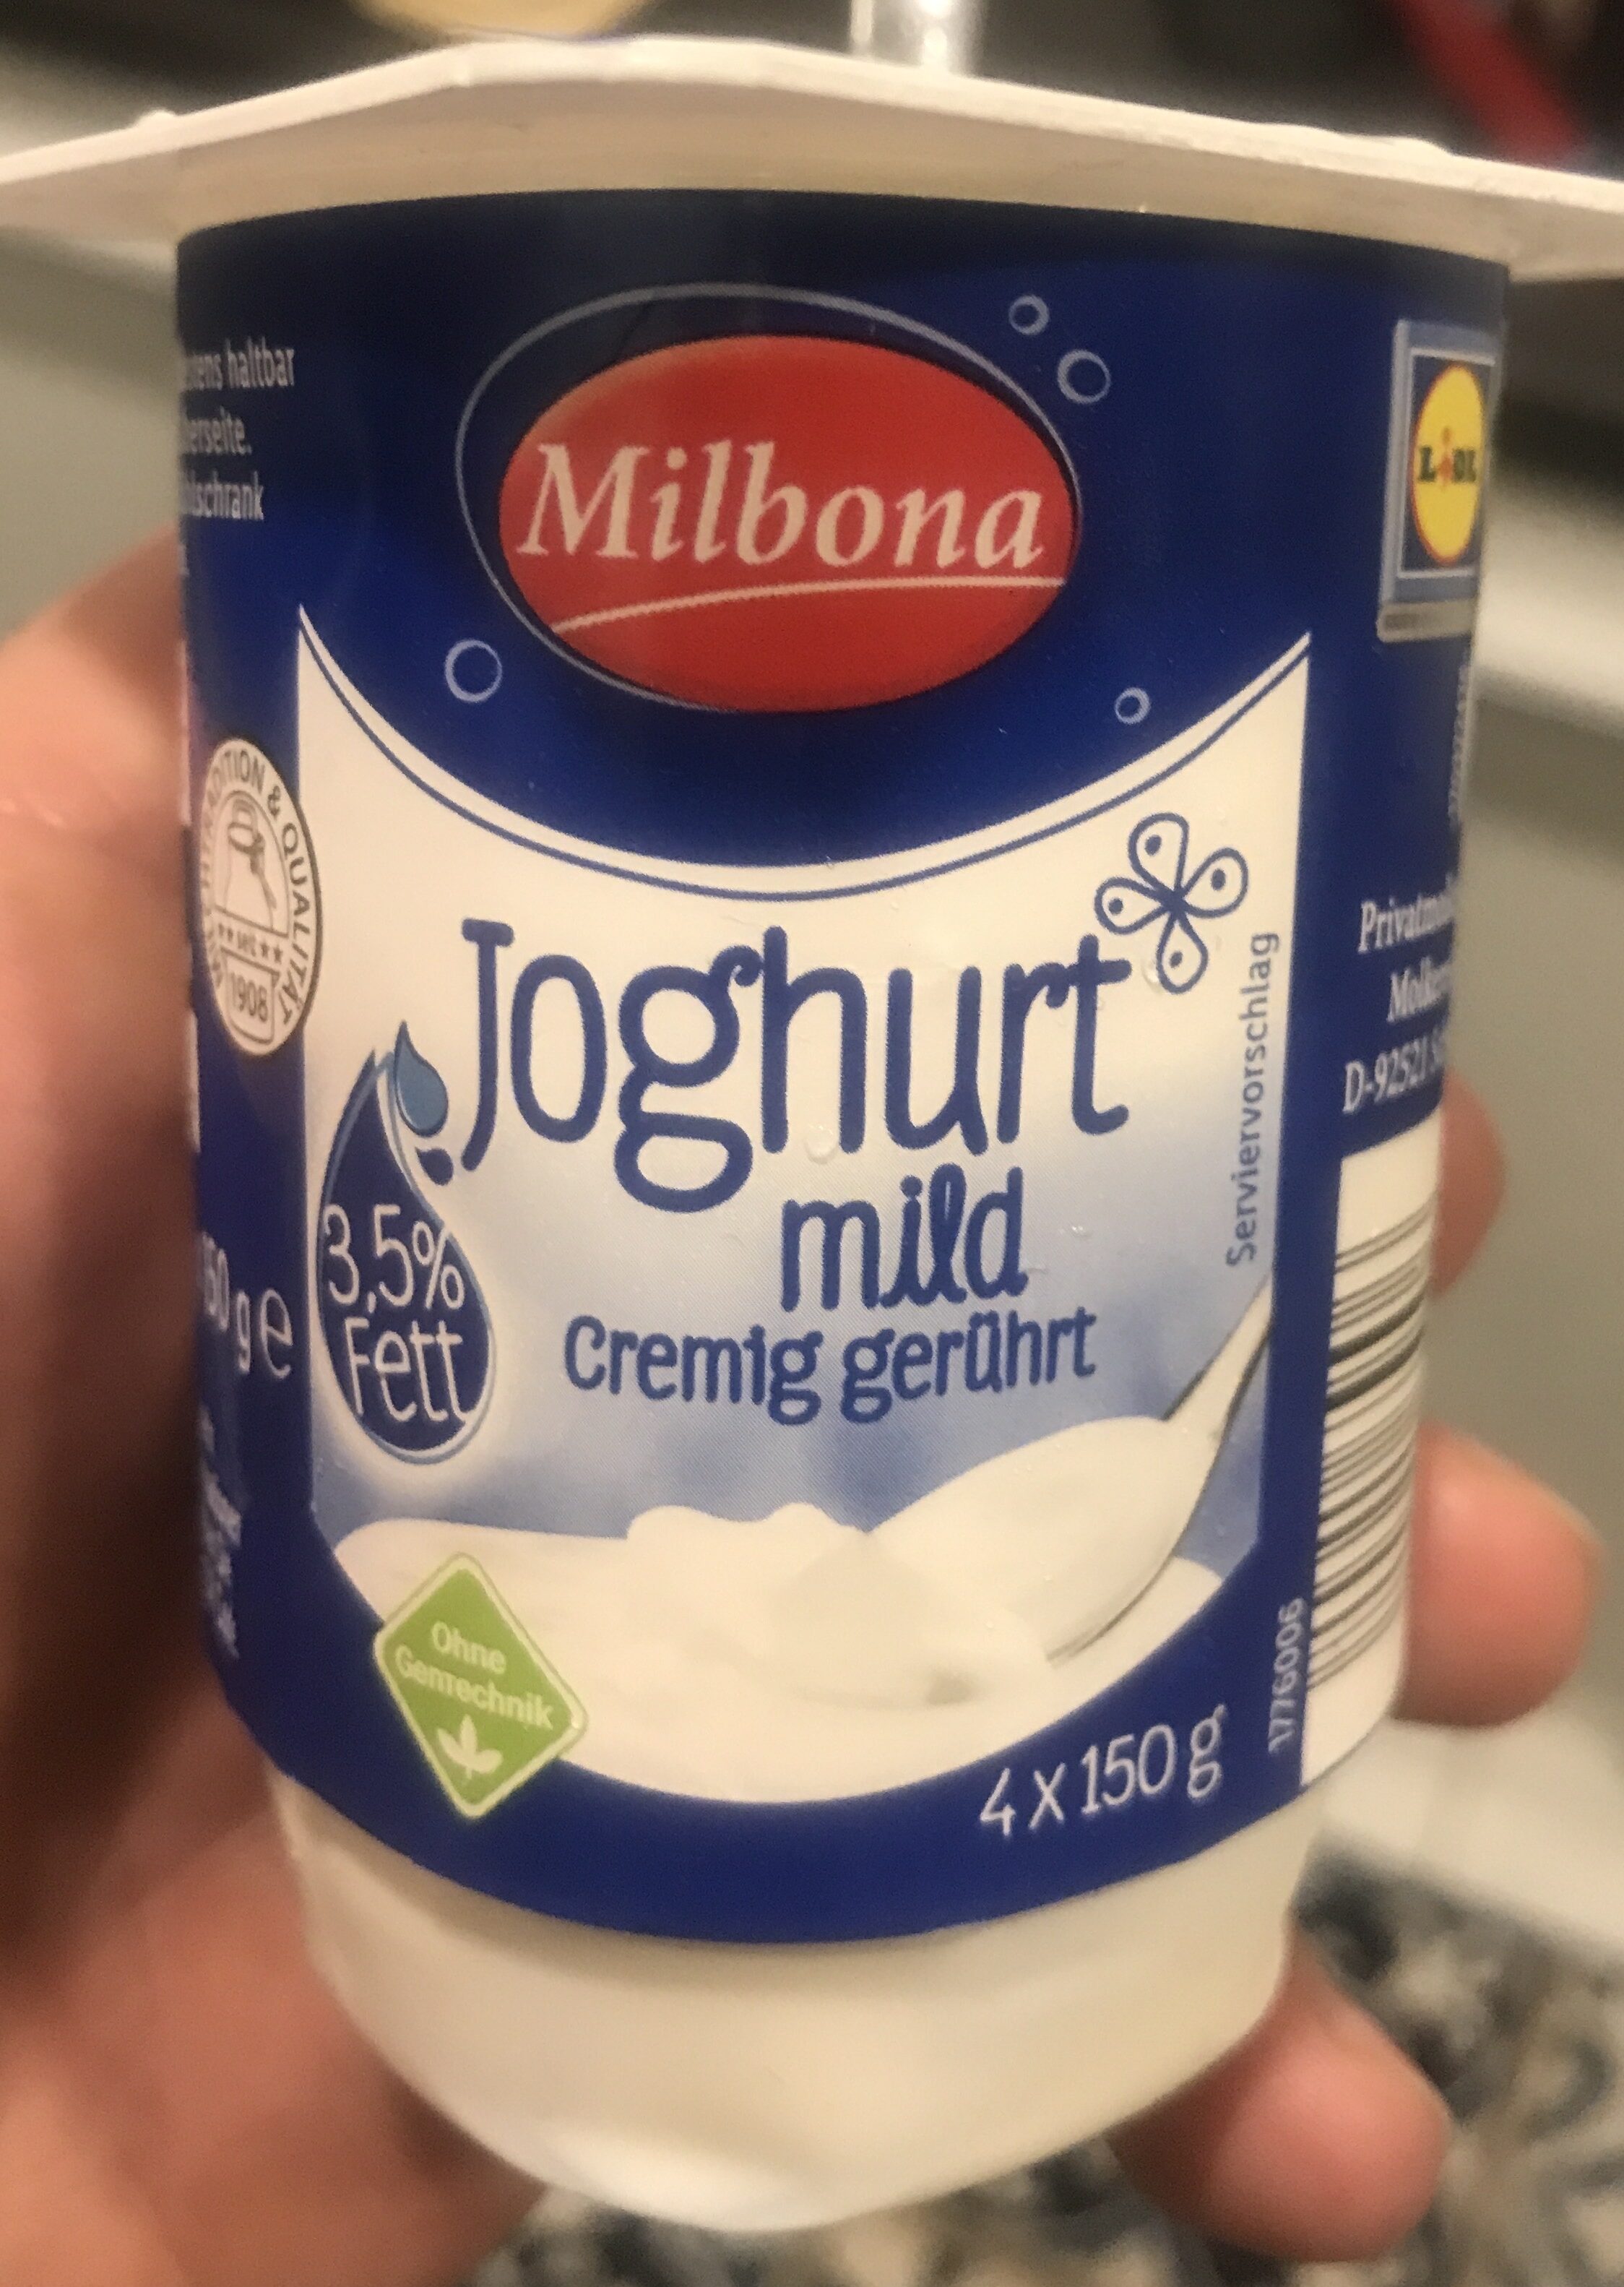 Joghurt mild - 产品 - de